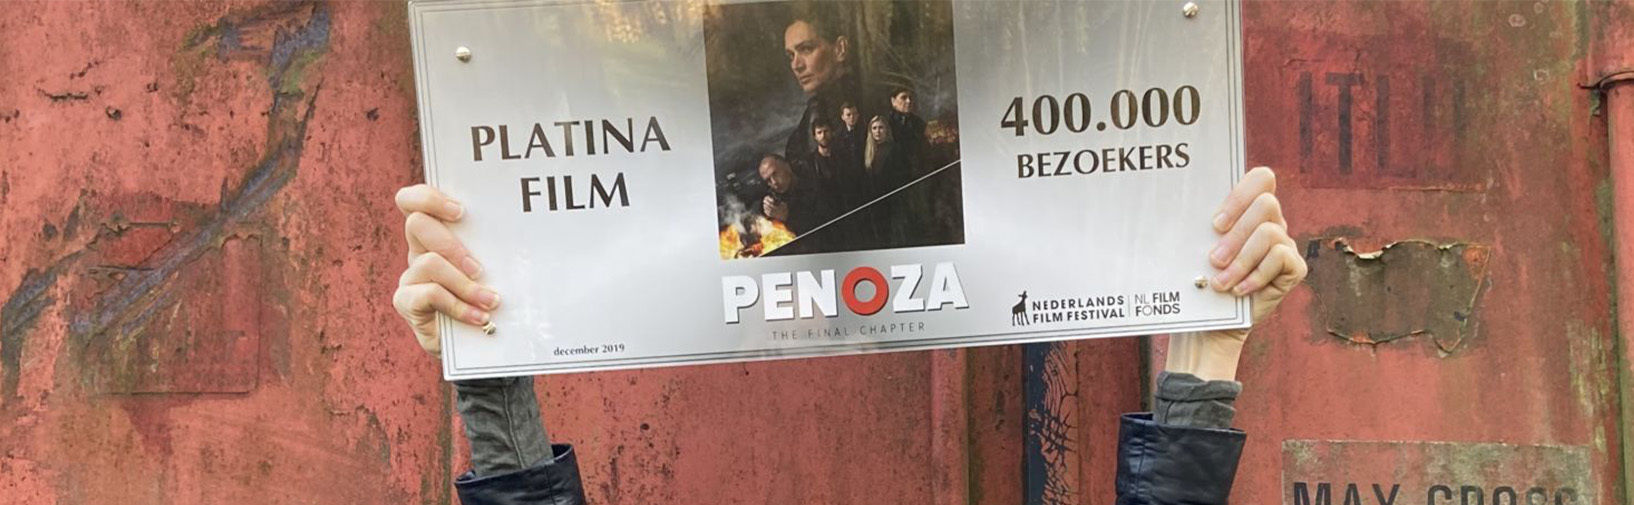 Platina Film voor Penoza: The Final Chapter hero image